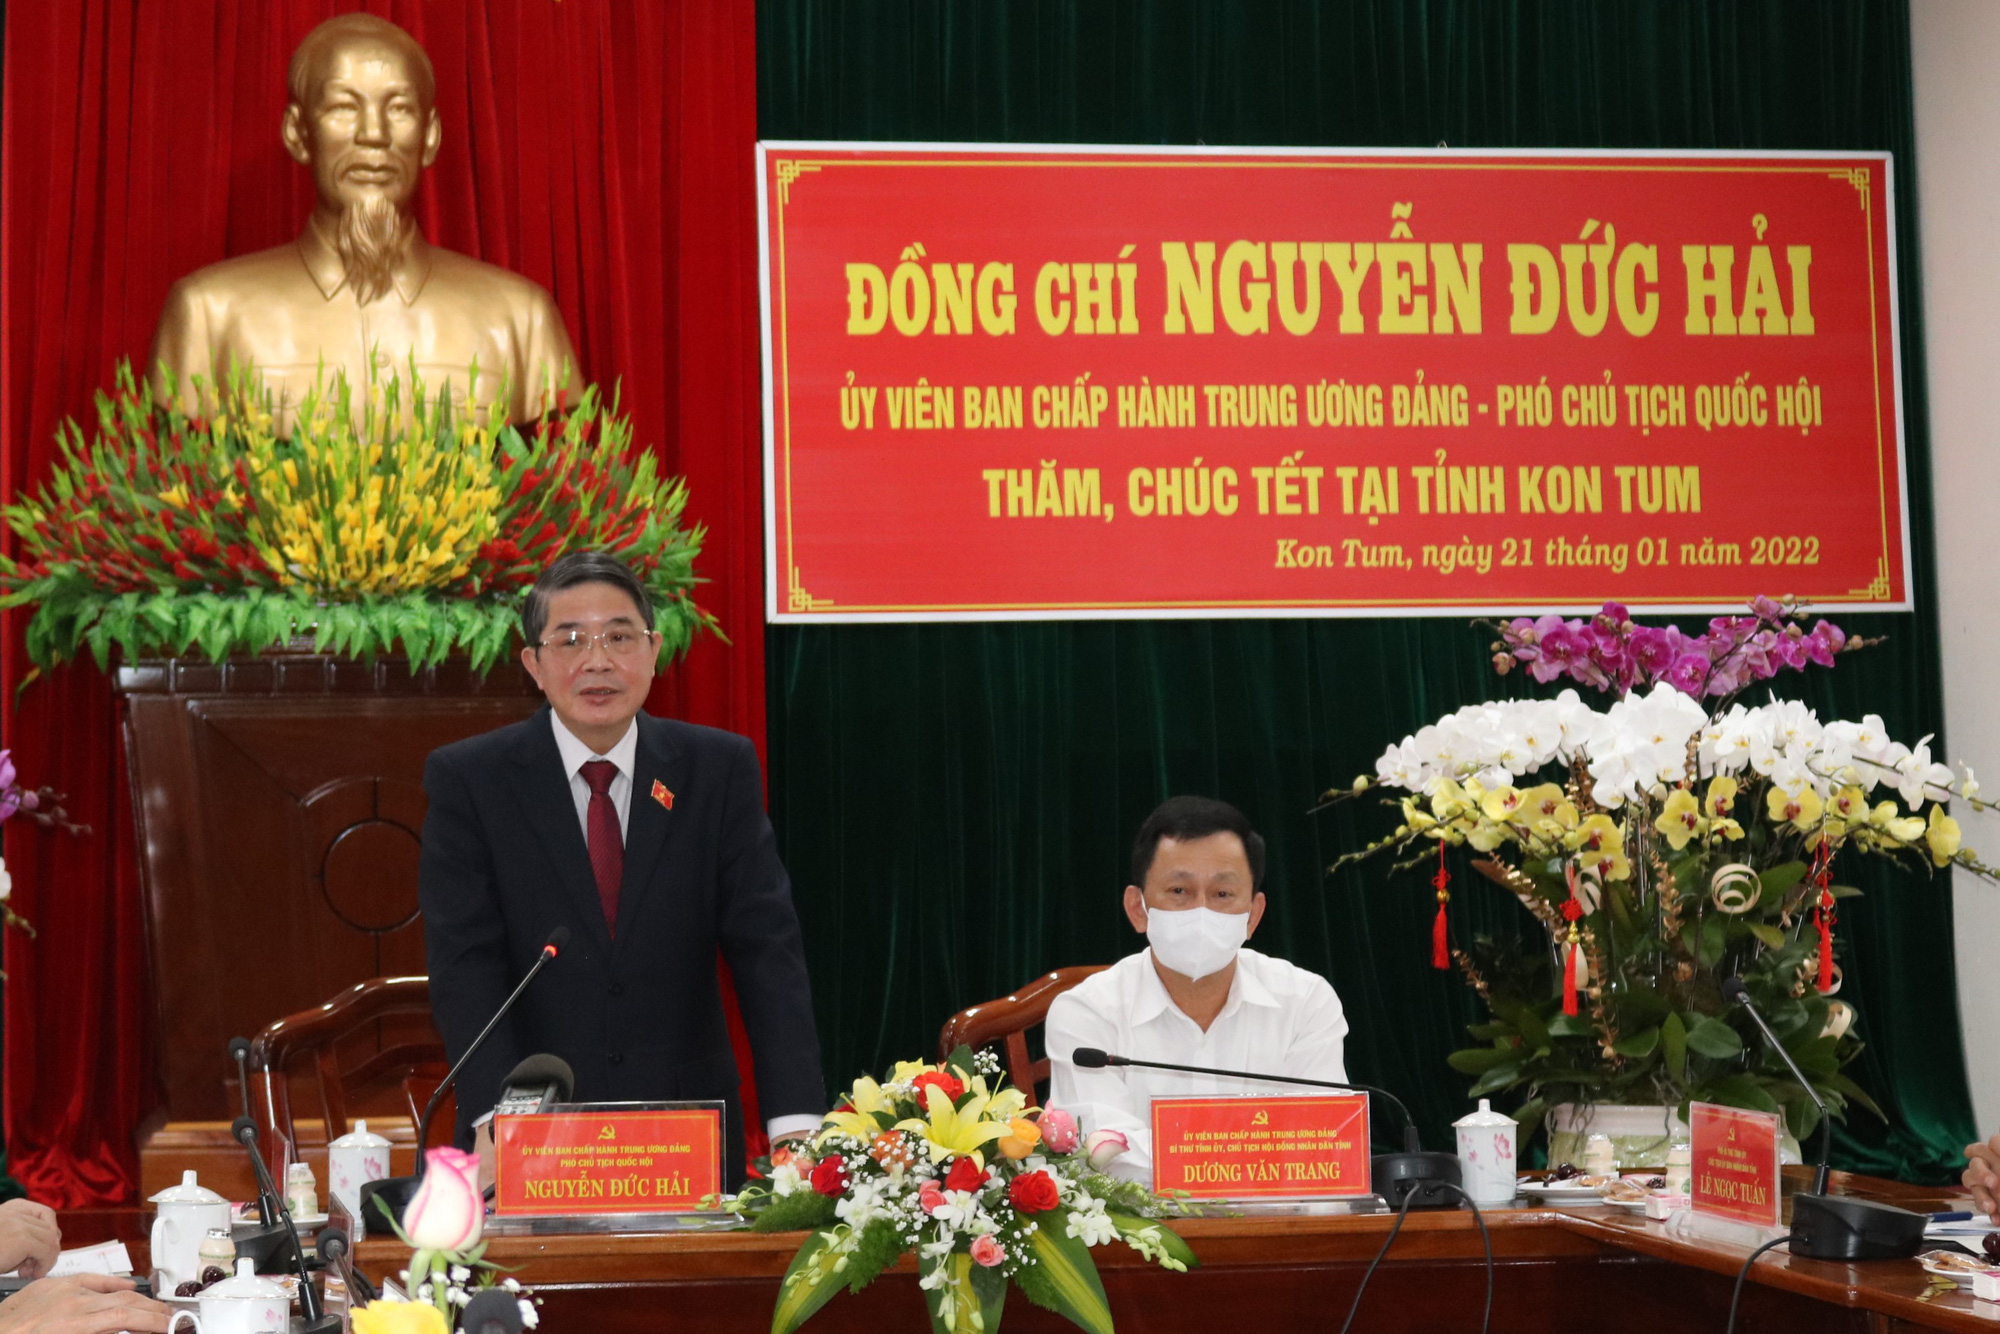 Phó Chủ tịch Quốc hội thăm, chúc Tết tại tỉnh Kon Tum